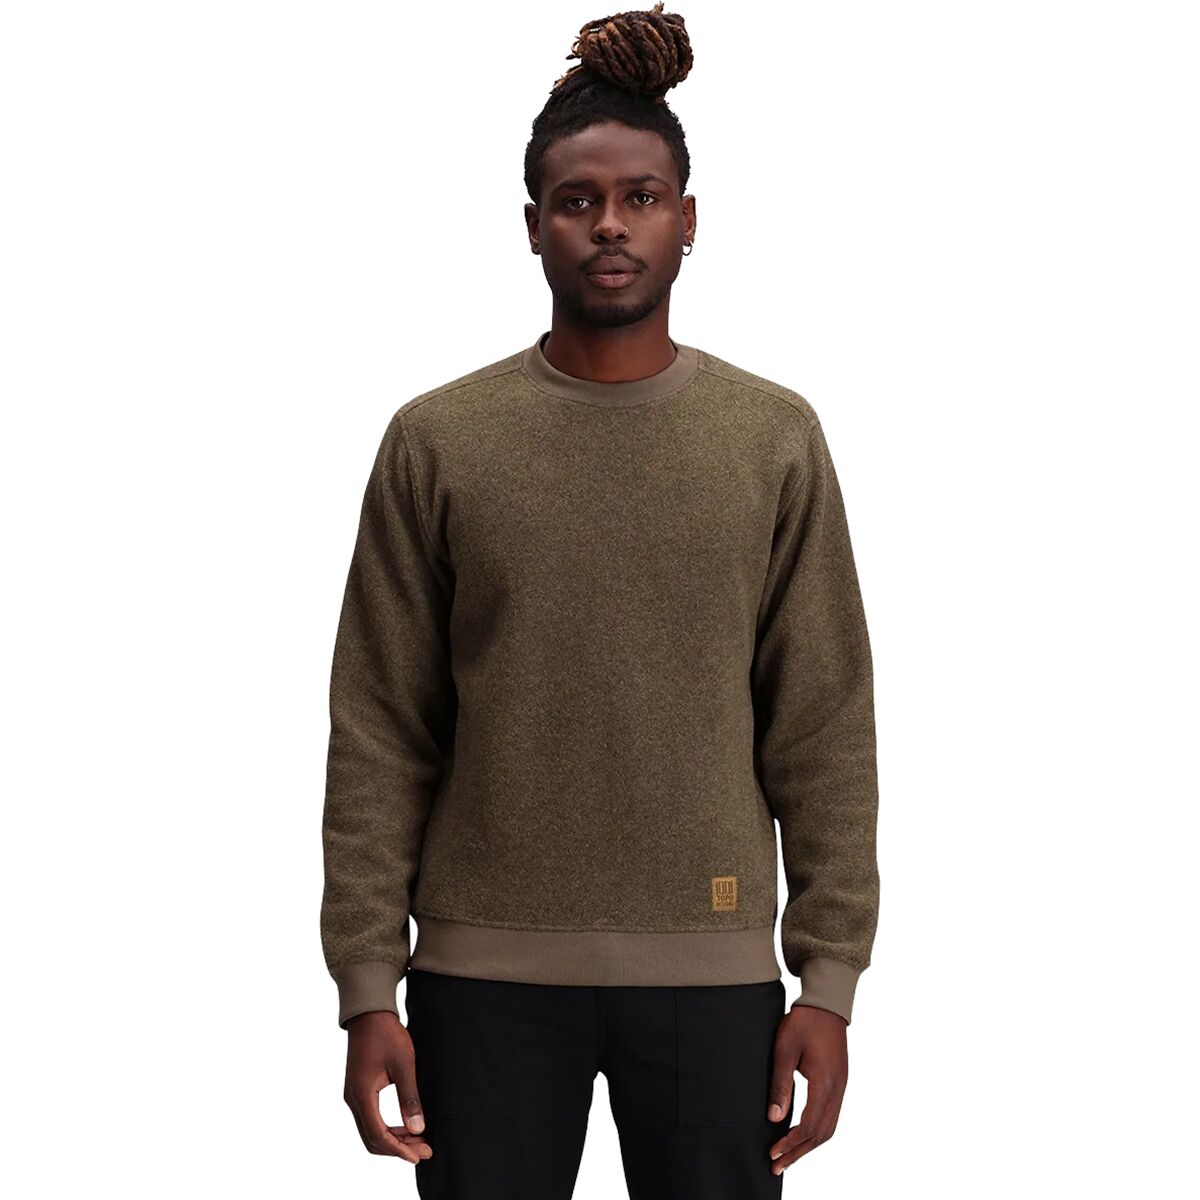 Global Sweater - Men